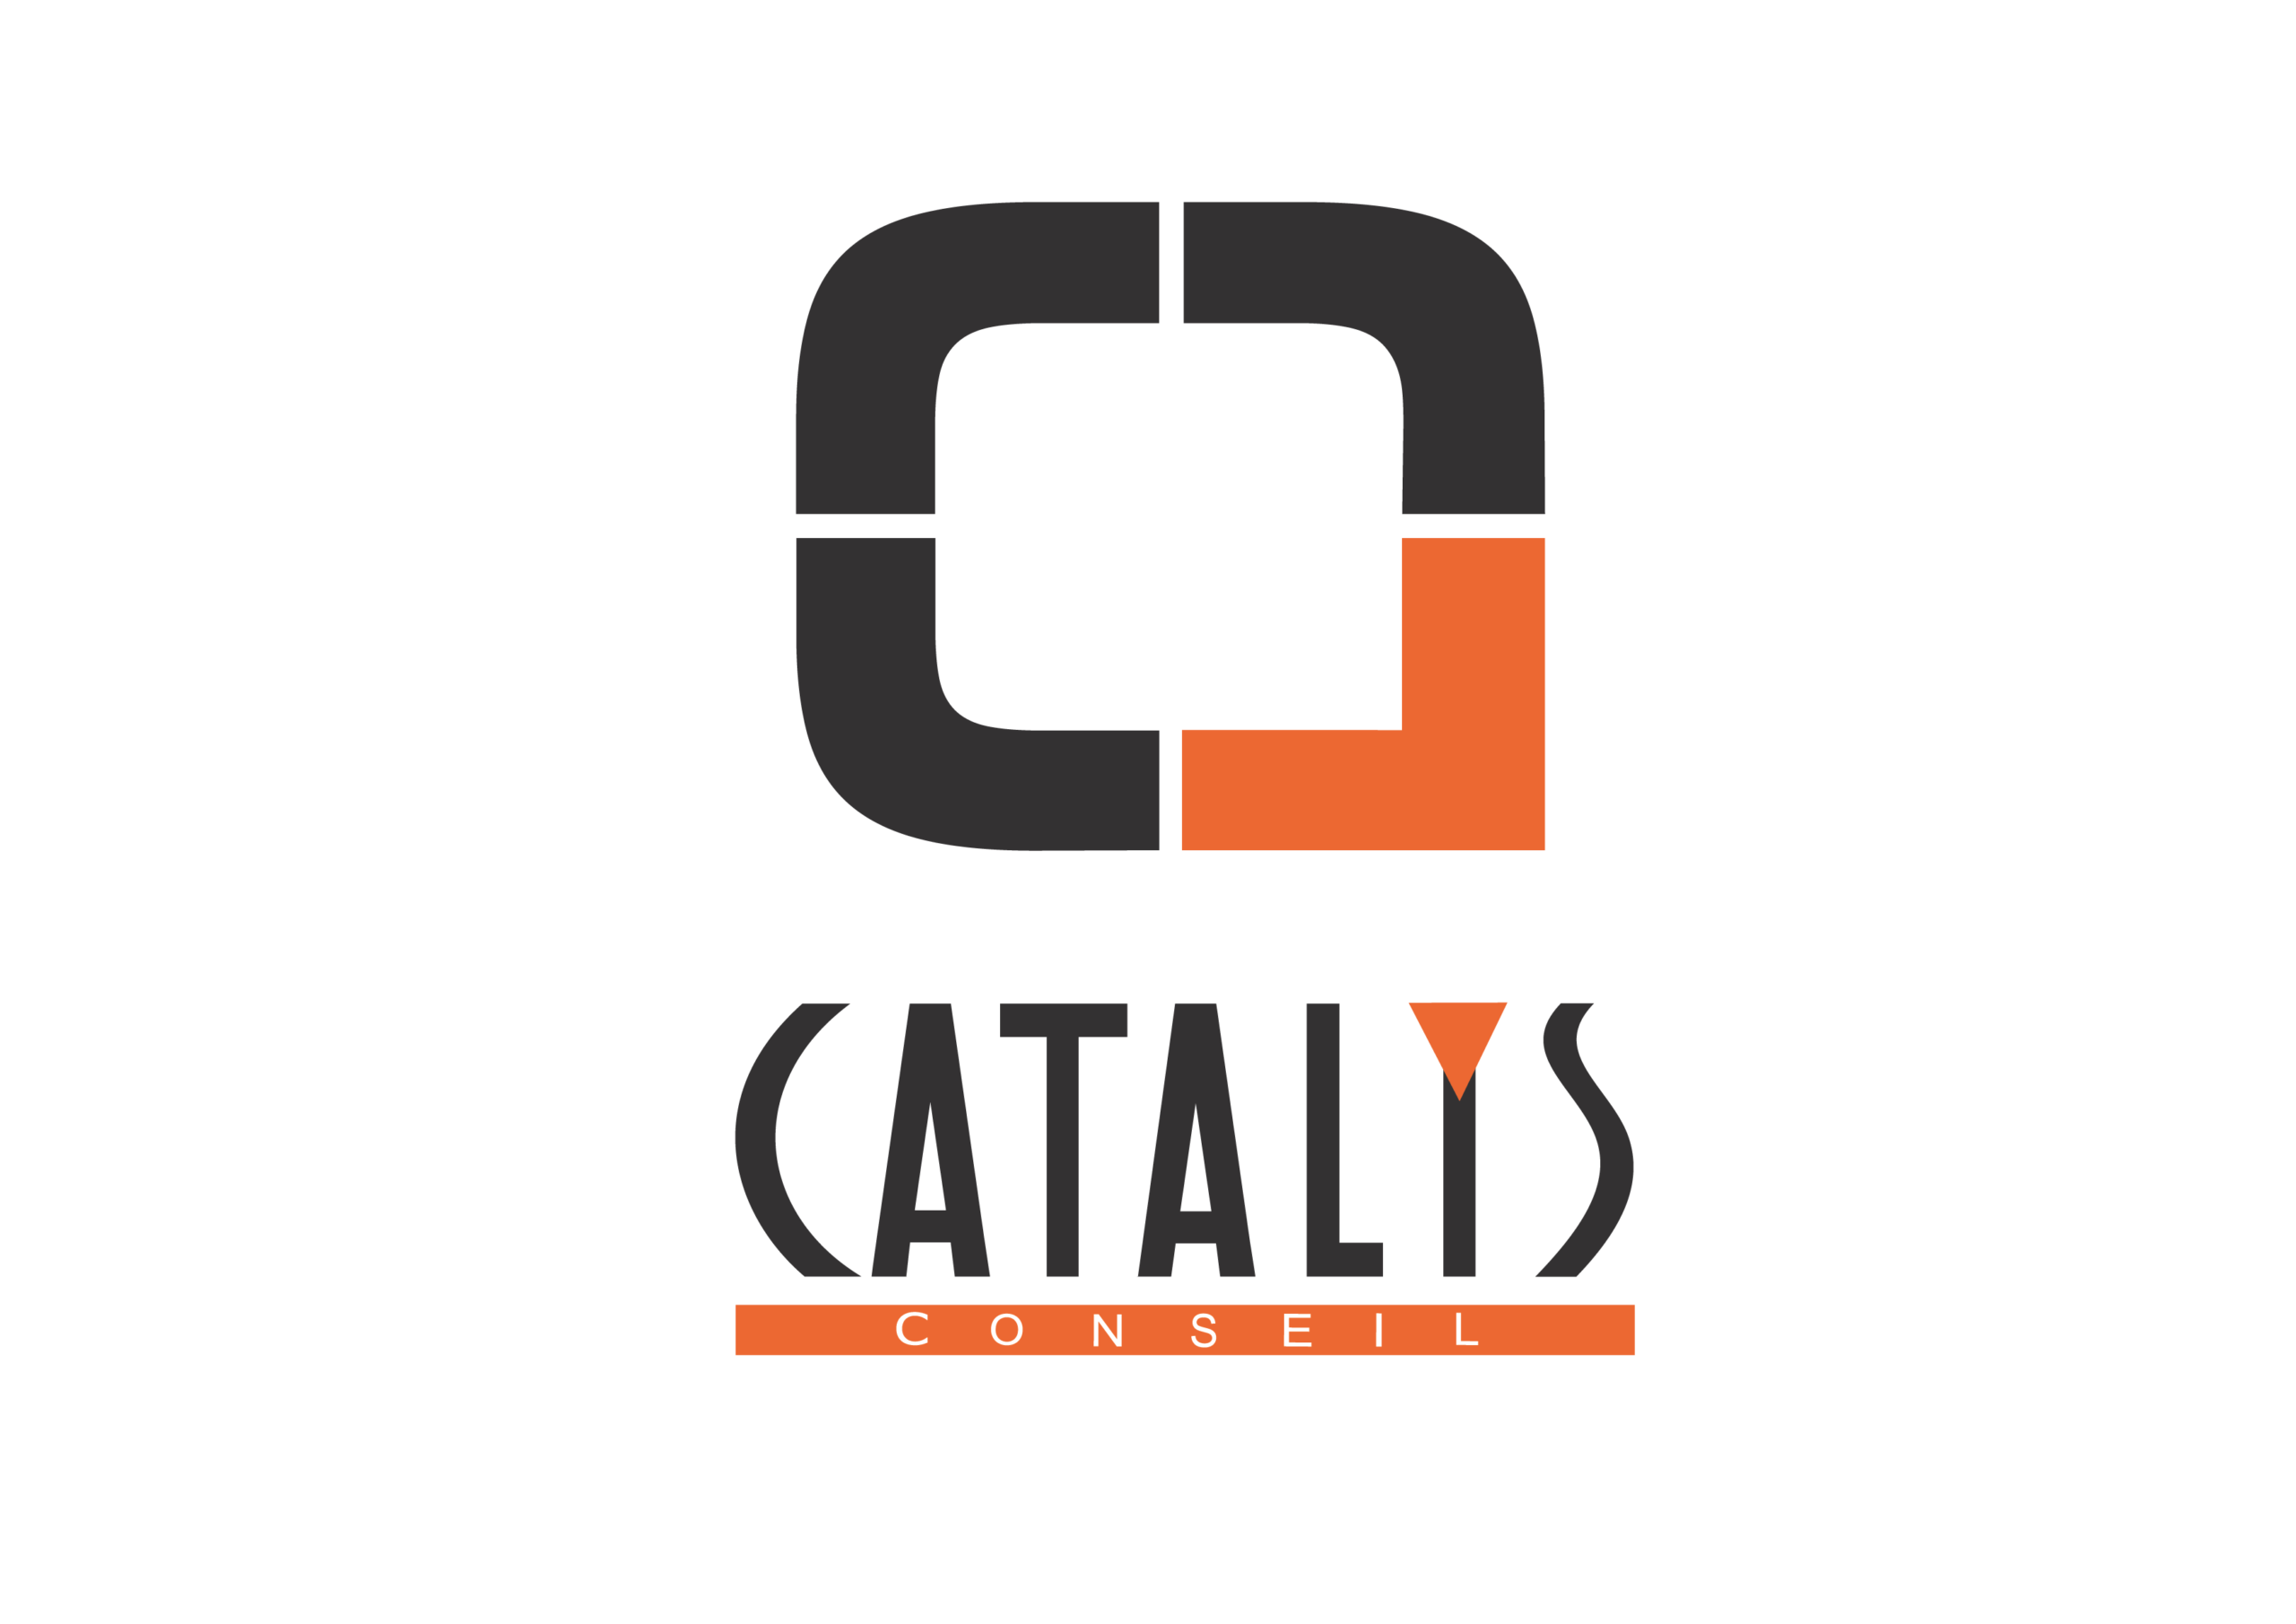 Catalys conseil référence client